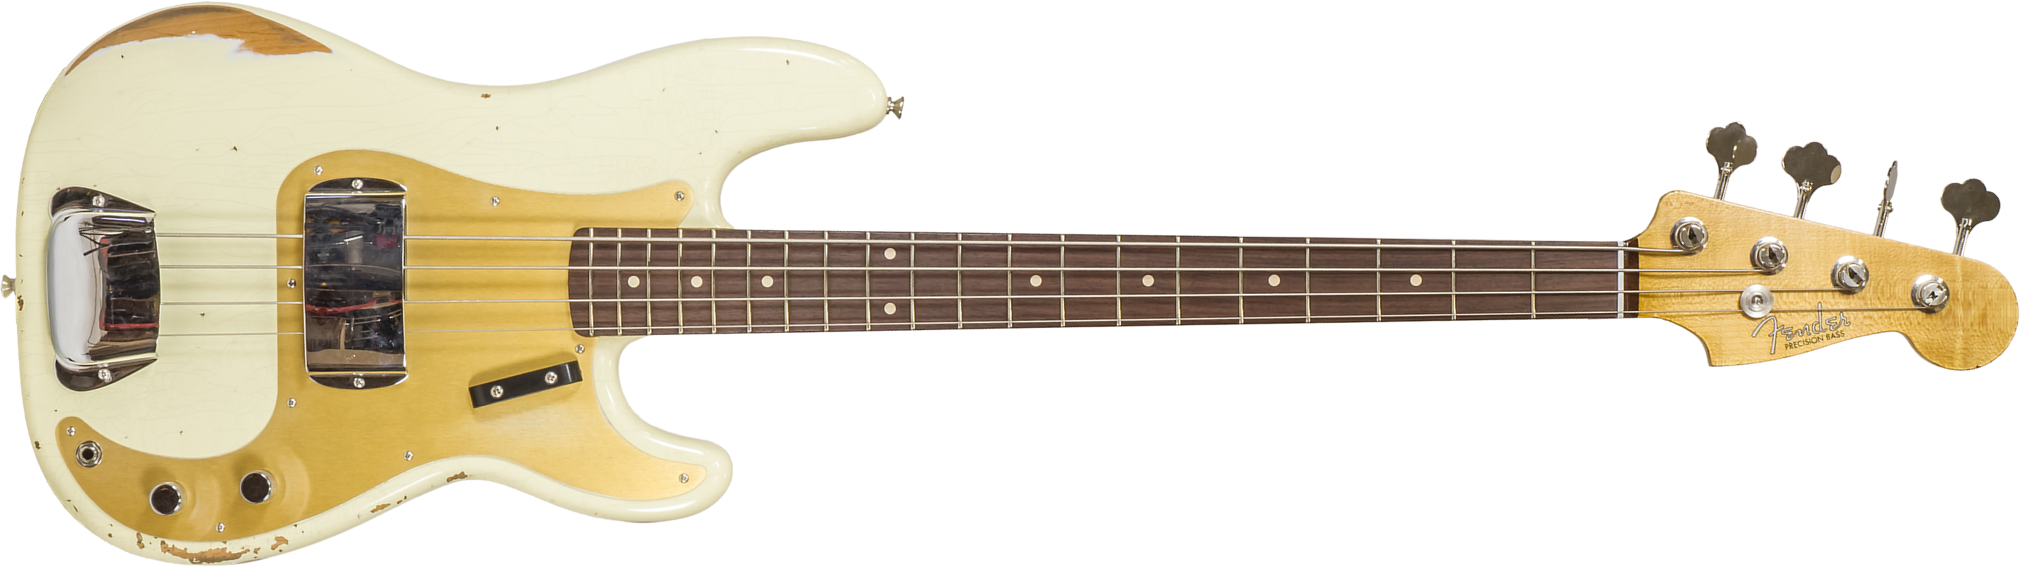 Fender Custom Shop Precision Bass 1960 Rw #r130966 - Closet Classic Vintage White - Basse Électrique Solid Body - Main picture